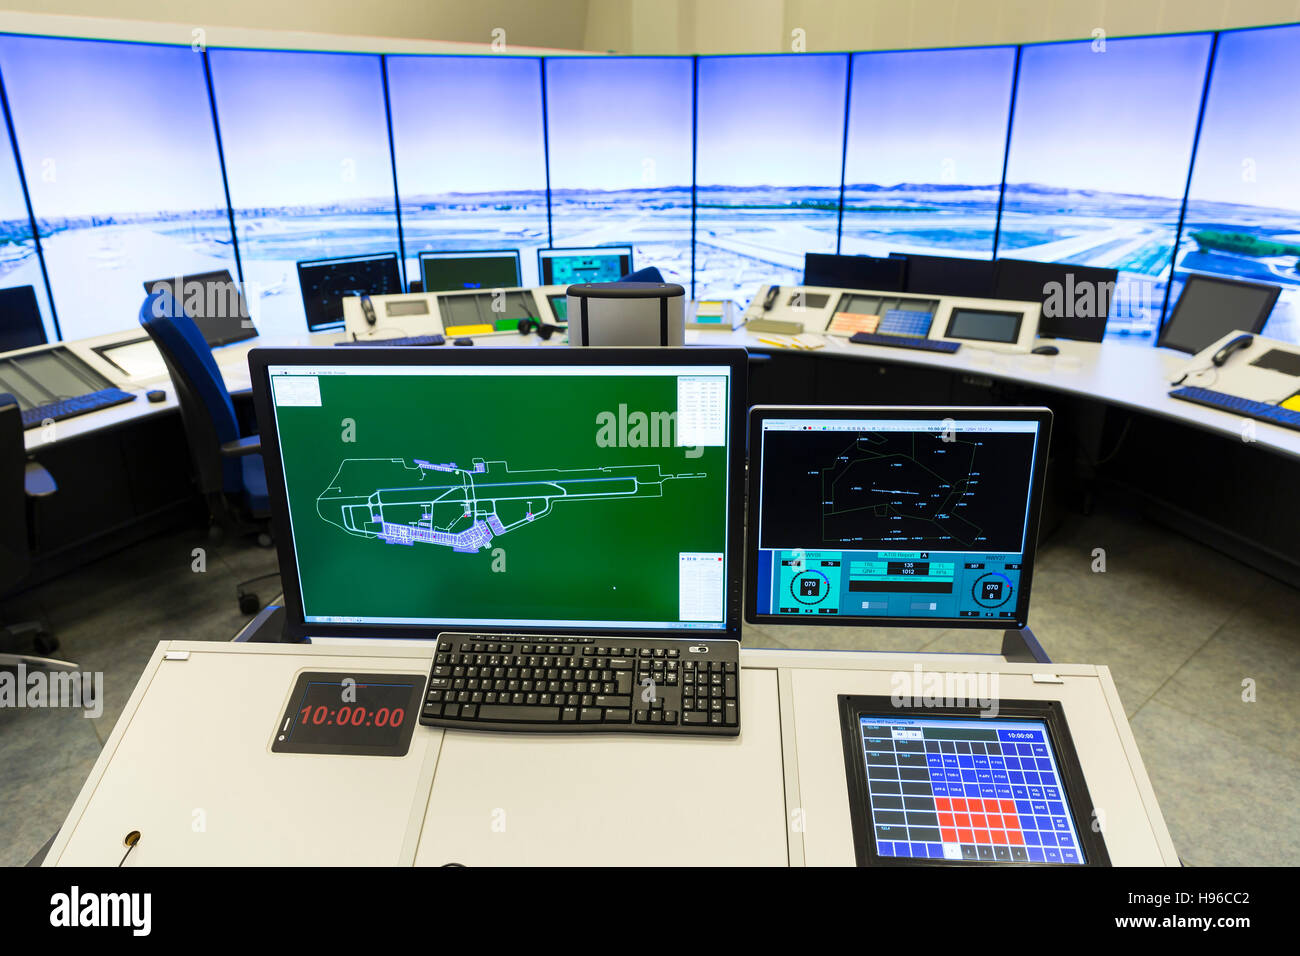 Les contrôleurs du trafic aérien à l'œuvre dans la tour de contrôle de vol de l'aéroport de Sofia. Les écrans d'ordinateur. Le contrôle de la circulation aérienne dirige l'appareil au sol Banque D'Images